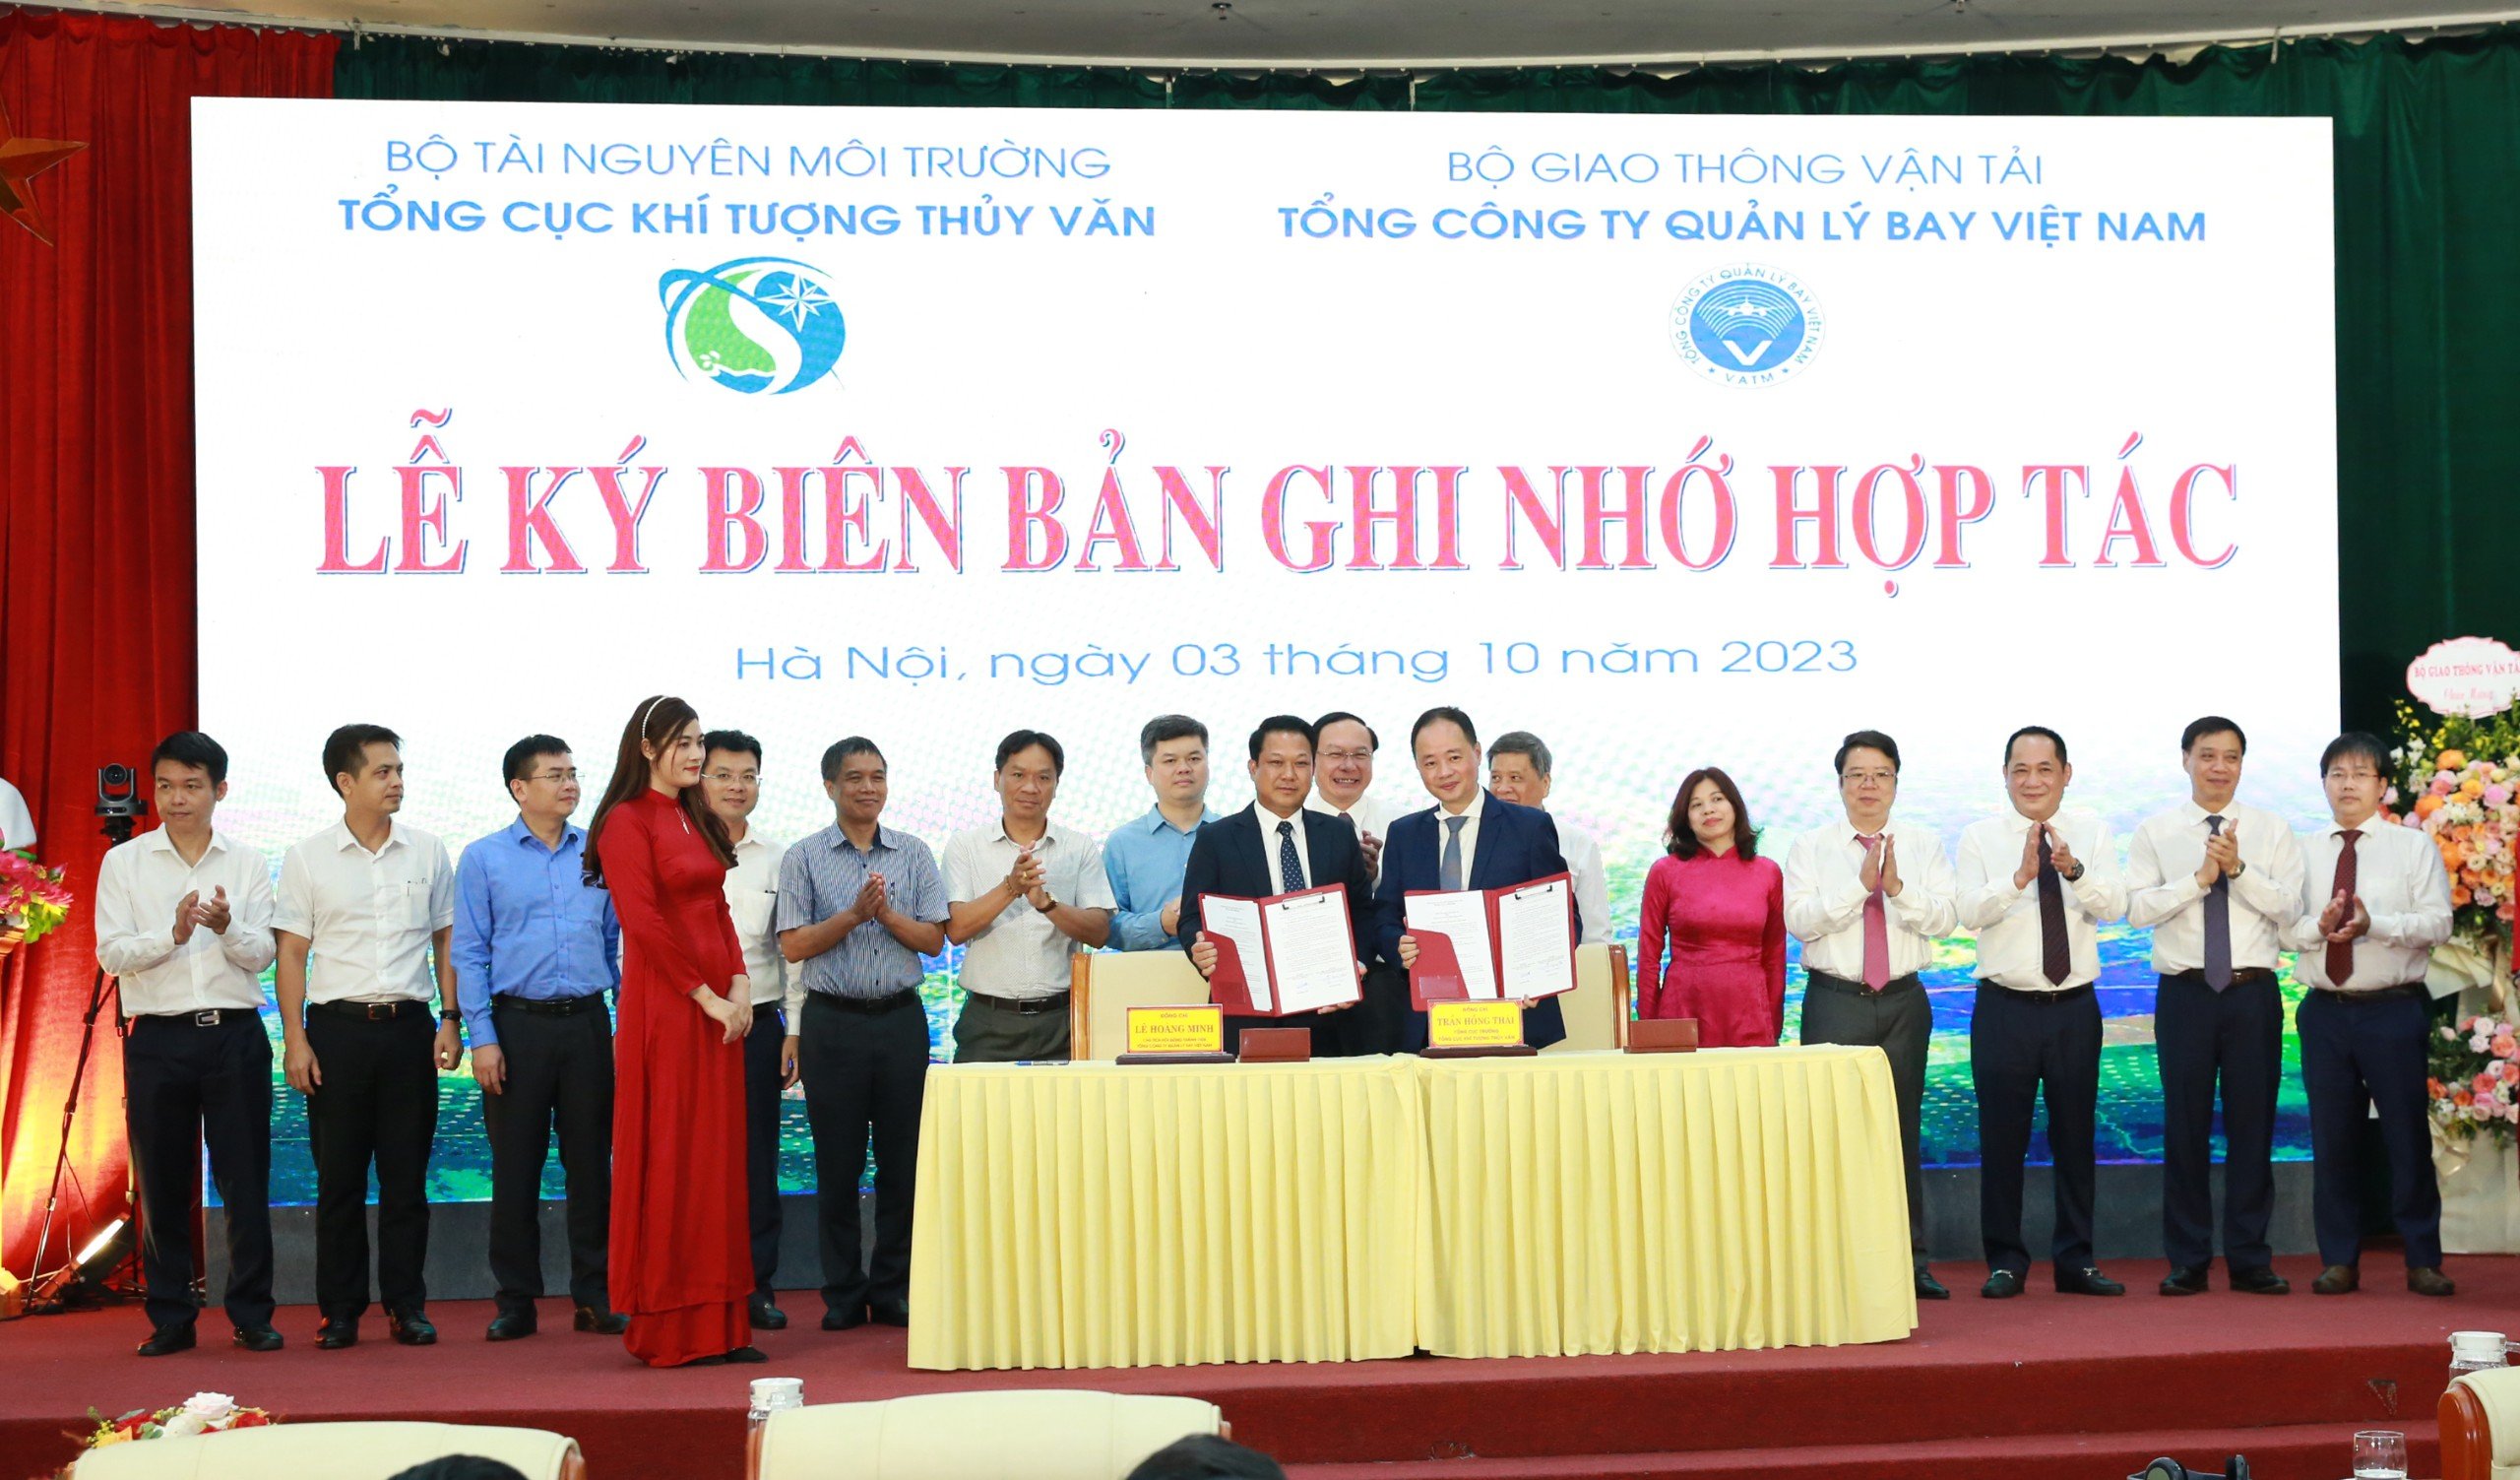 Tổng cục Khí tượng Thủy văn và Tổng công ty Quản lý bay Việt Nam ký kết Biên bản ghi nhớ hợp tác